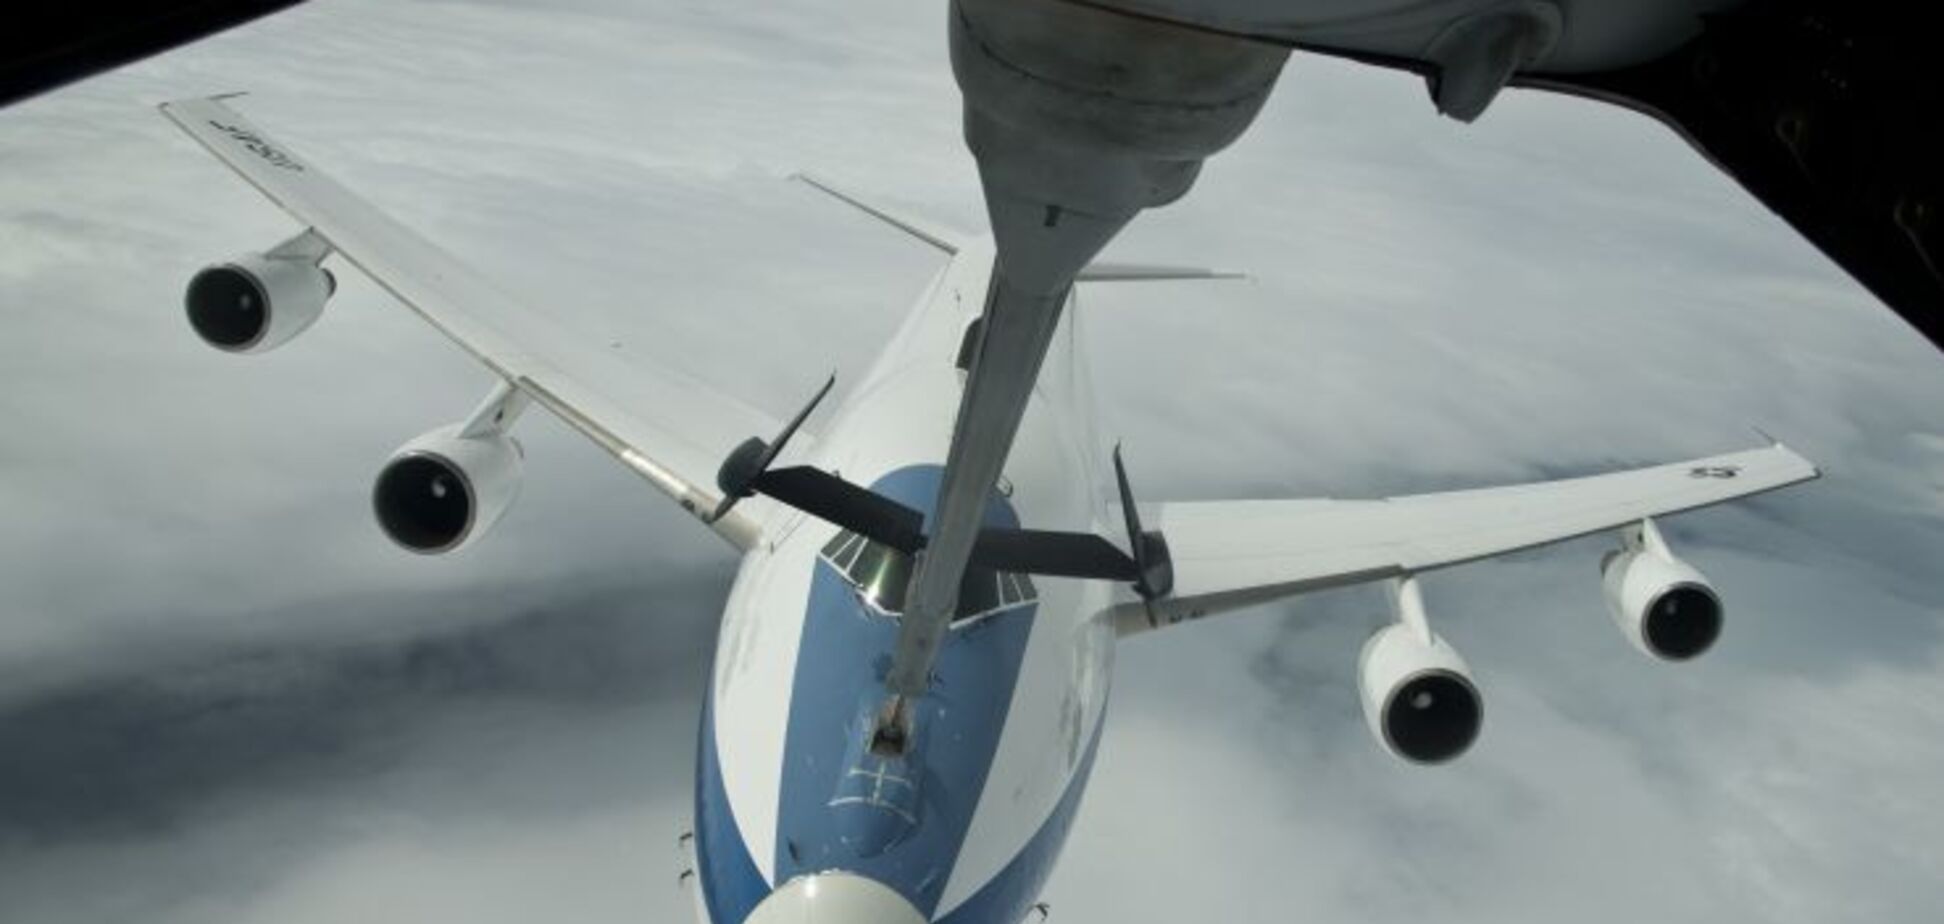  Самолет 'Судного дня' США показали изнутри: уникальные фото и видео